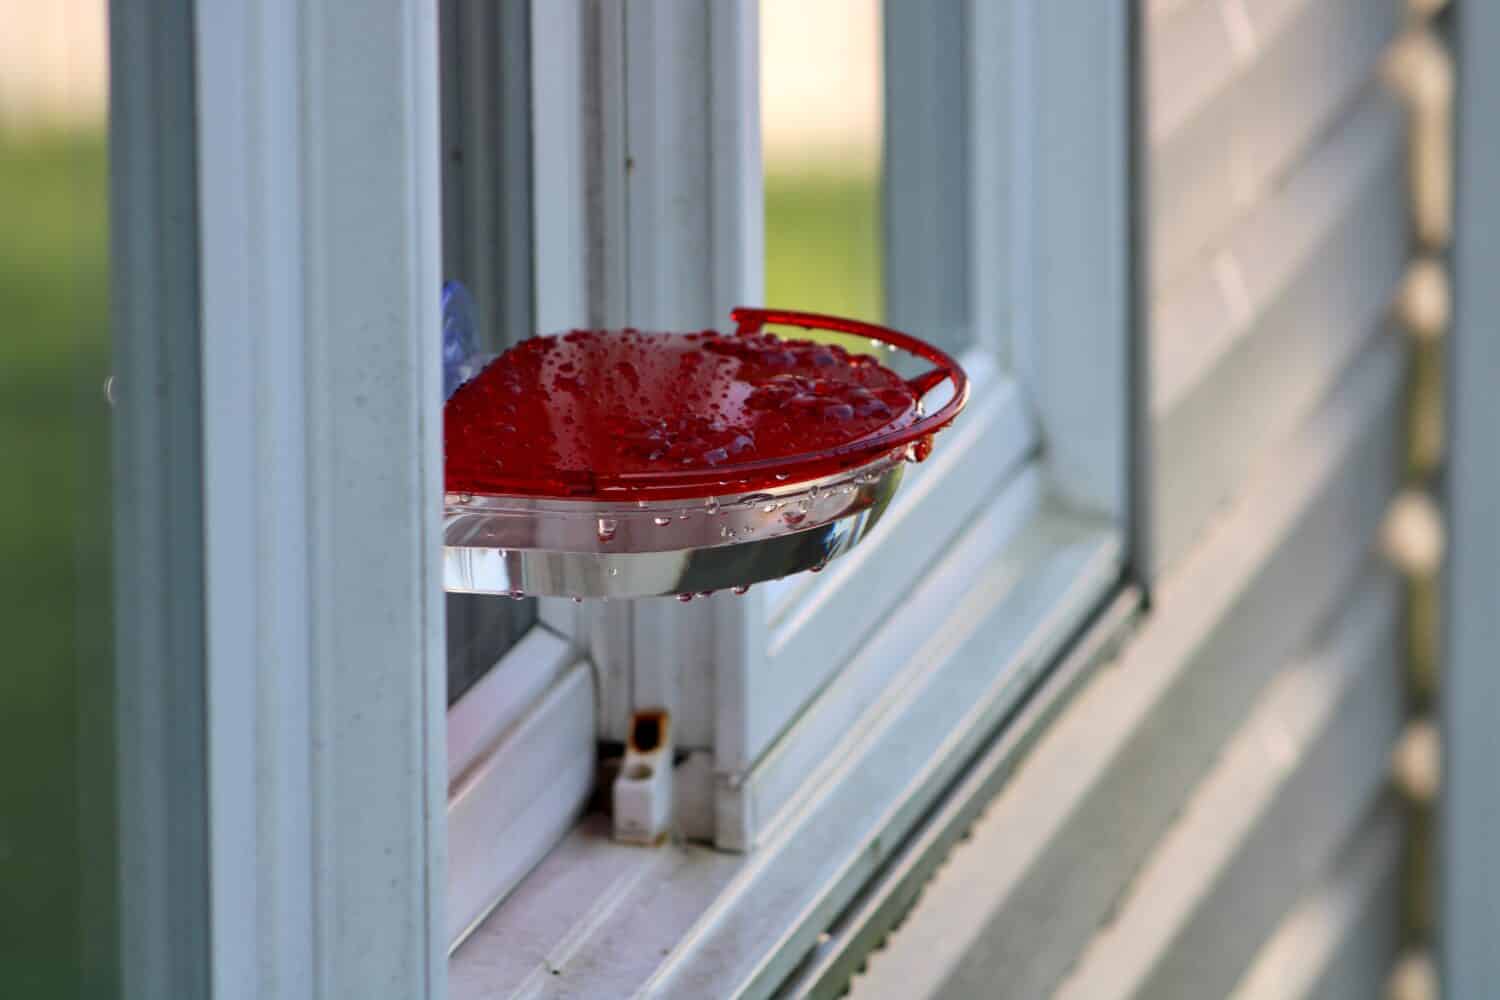 Una mangiatoia rotonda con finestra che si fissa all'esterno tramite ventose. La mangiatoia per colibrì è rossa con tre porte di alimentazione e una barra su cui gli uccelli possono appollaiarsi mentre bevono.